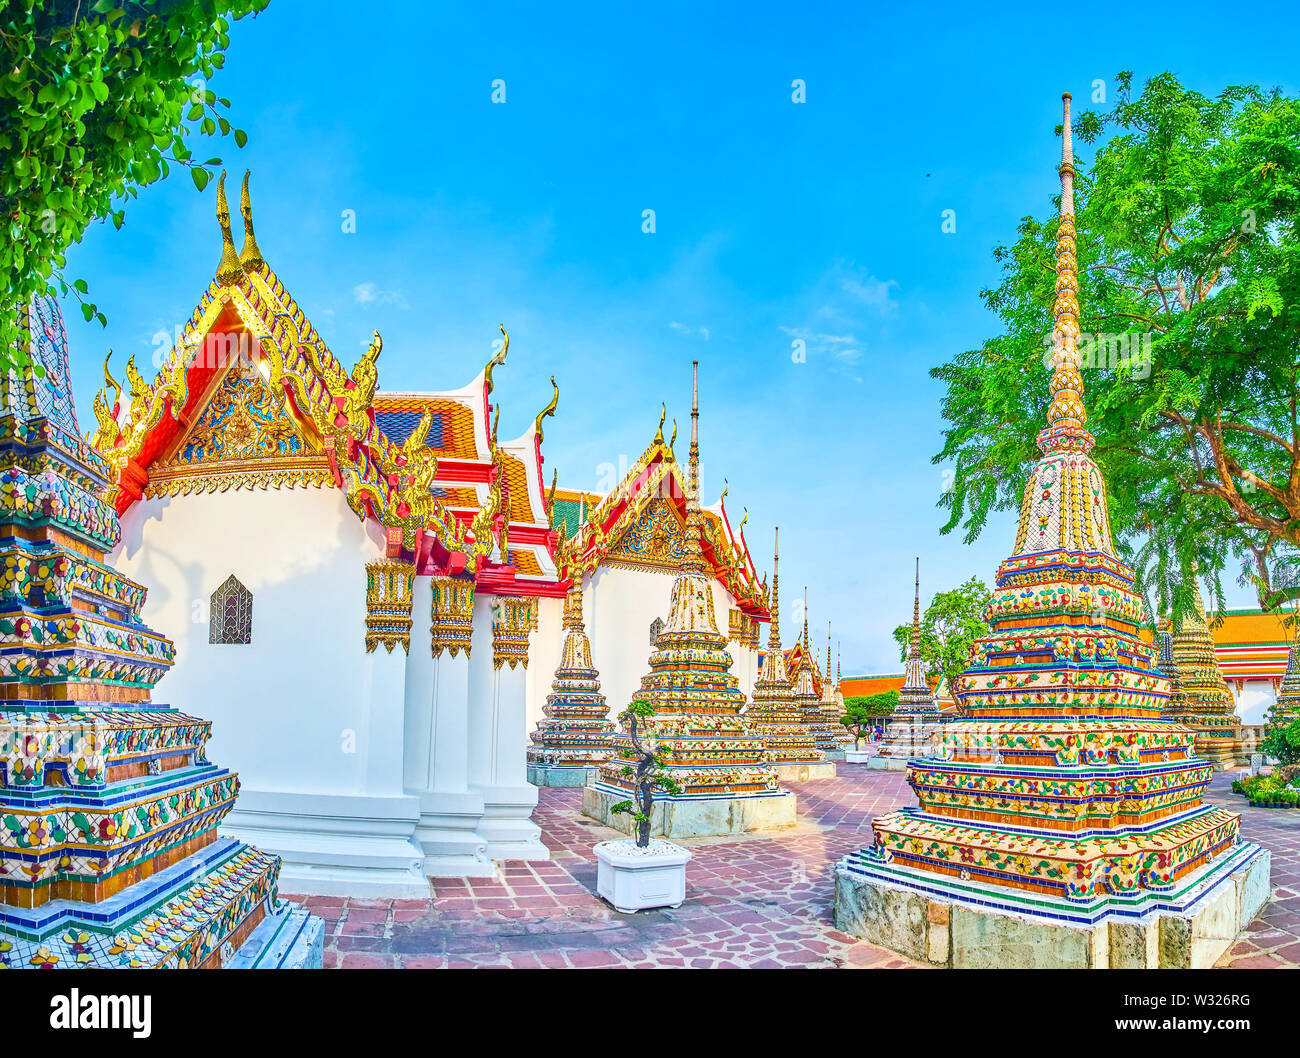 Die Architektur der Wat Pho religion Komplex verfügt über herrliche Fliesen- Dekoration von zahlreichen Pagoden und geschnitzten Gilden Muster auf die Dächer der Viharns s Stockfoto